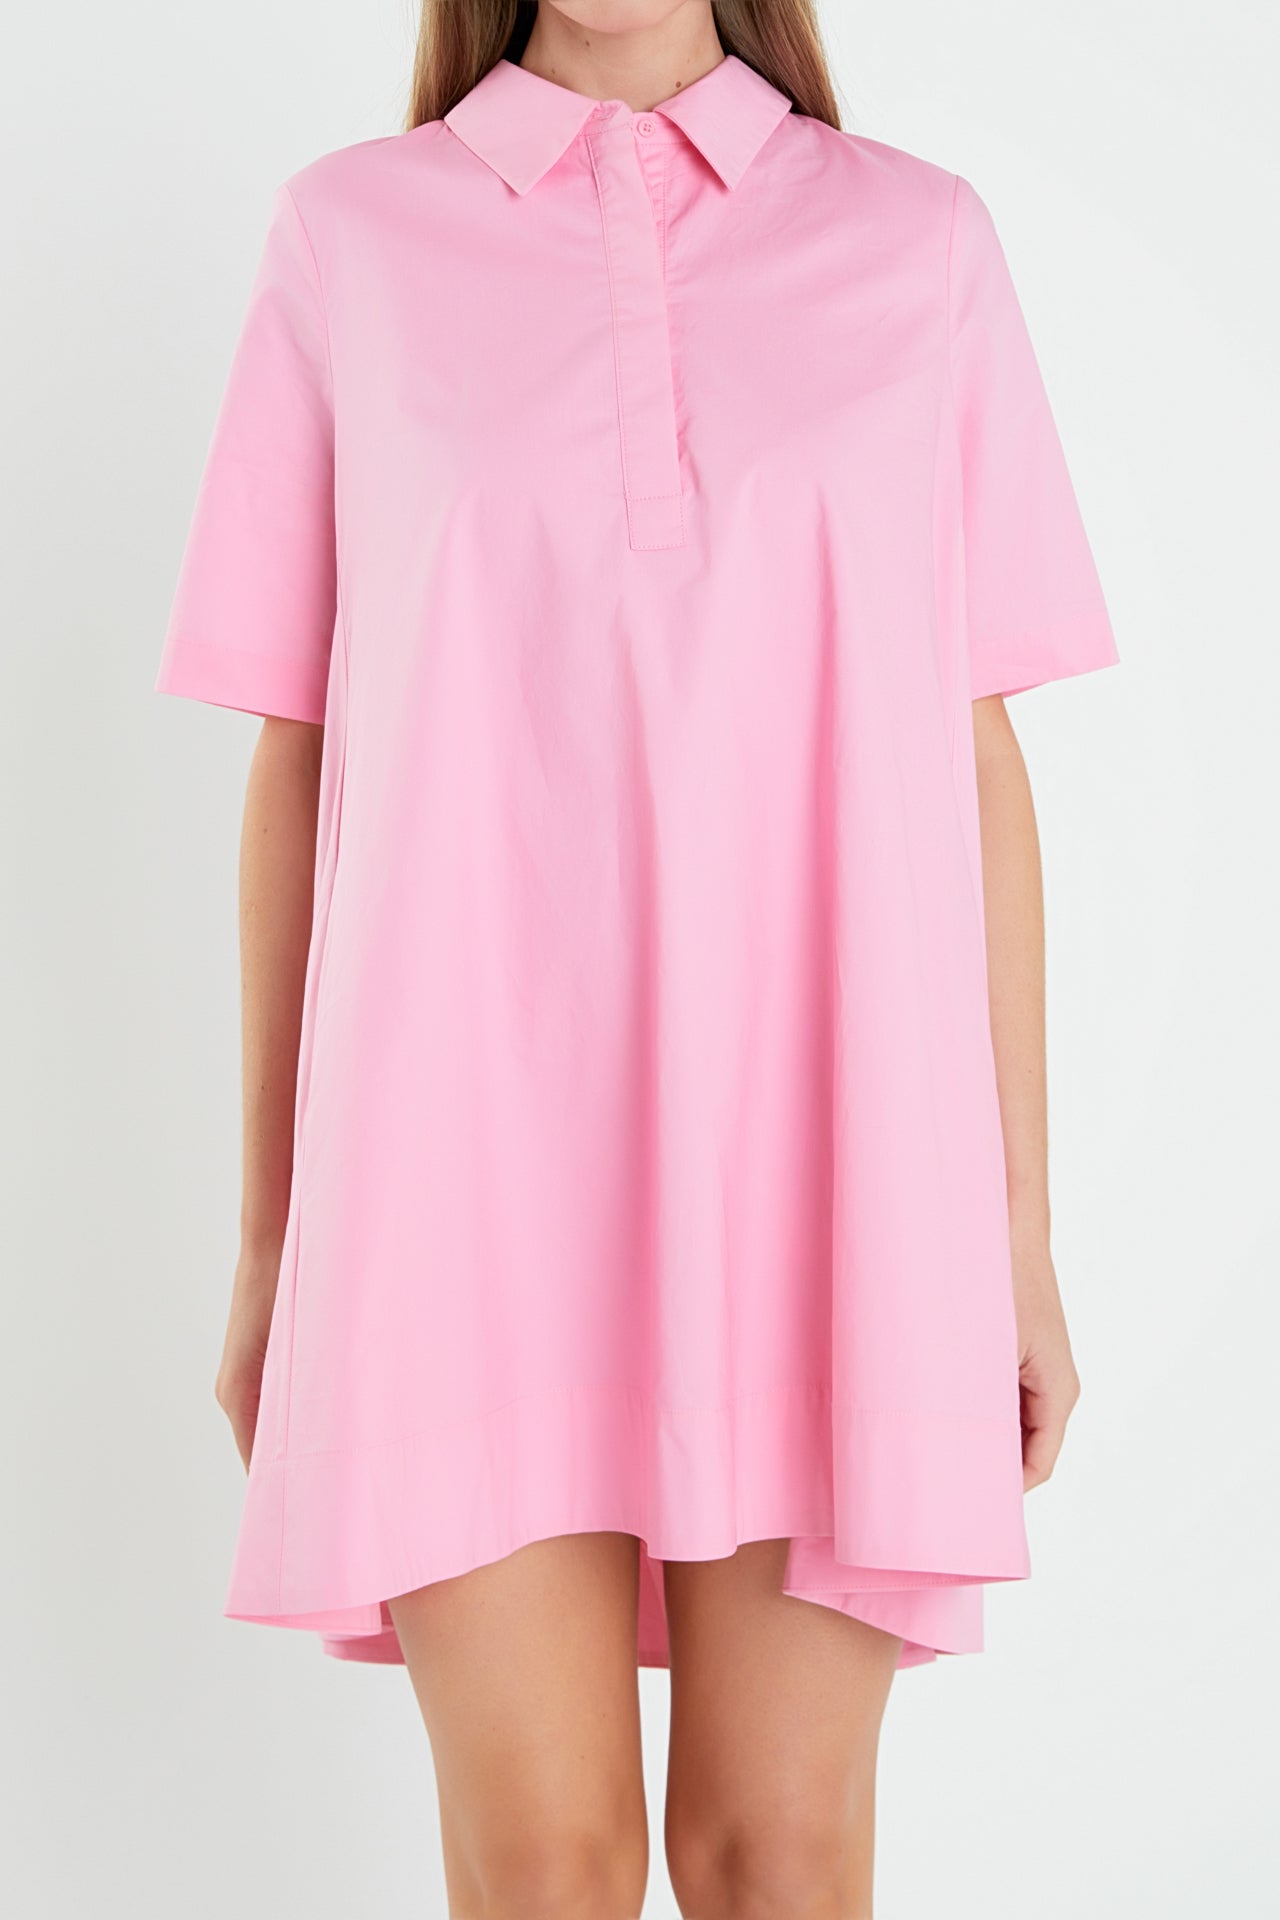 A-line Short Sleeve Shirt Dress